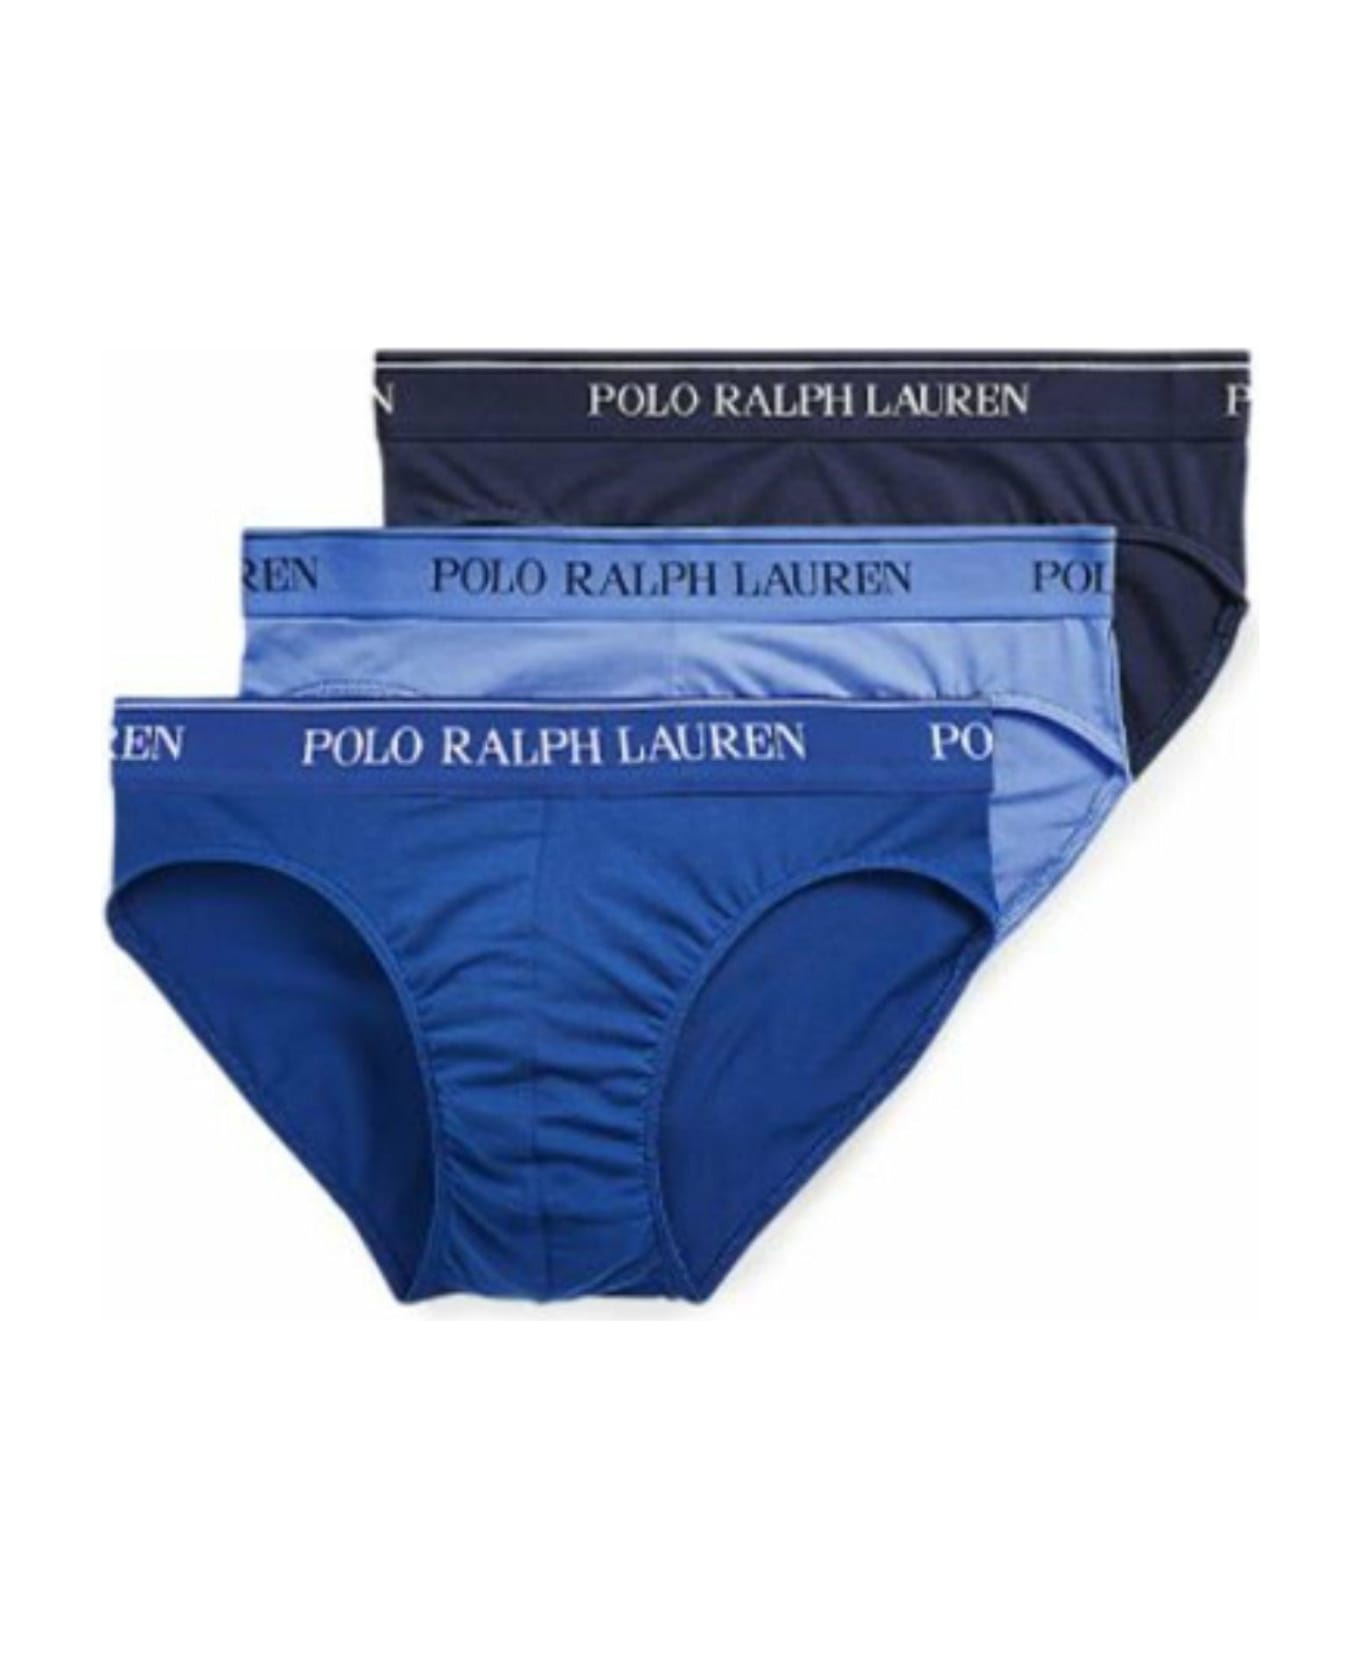 Polo Ralph Lauren 'core Replen' Tripack Cotton Briefs - MULTICOLOR ショーツ